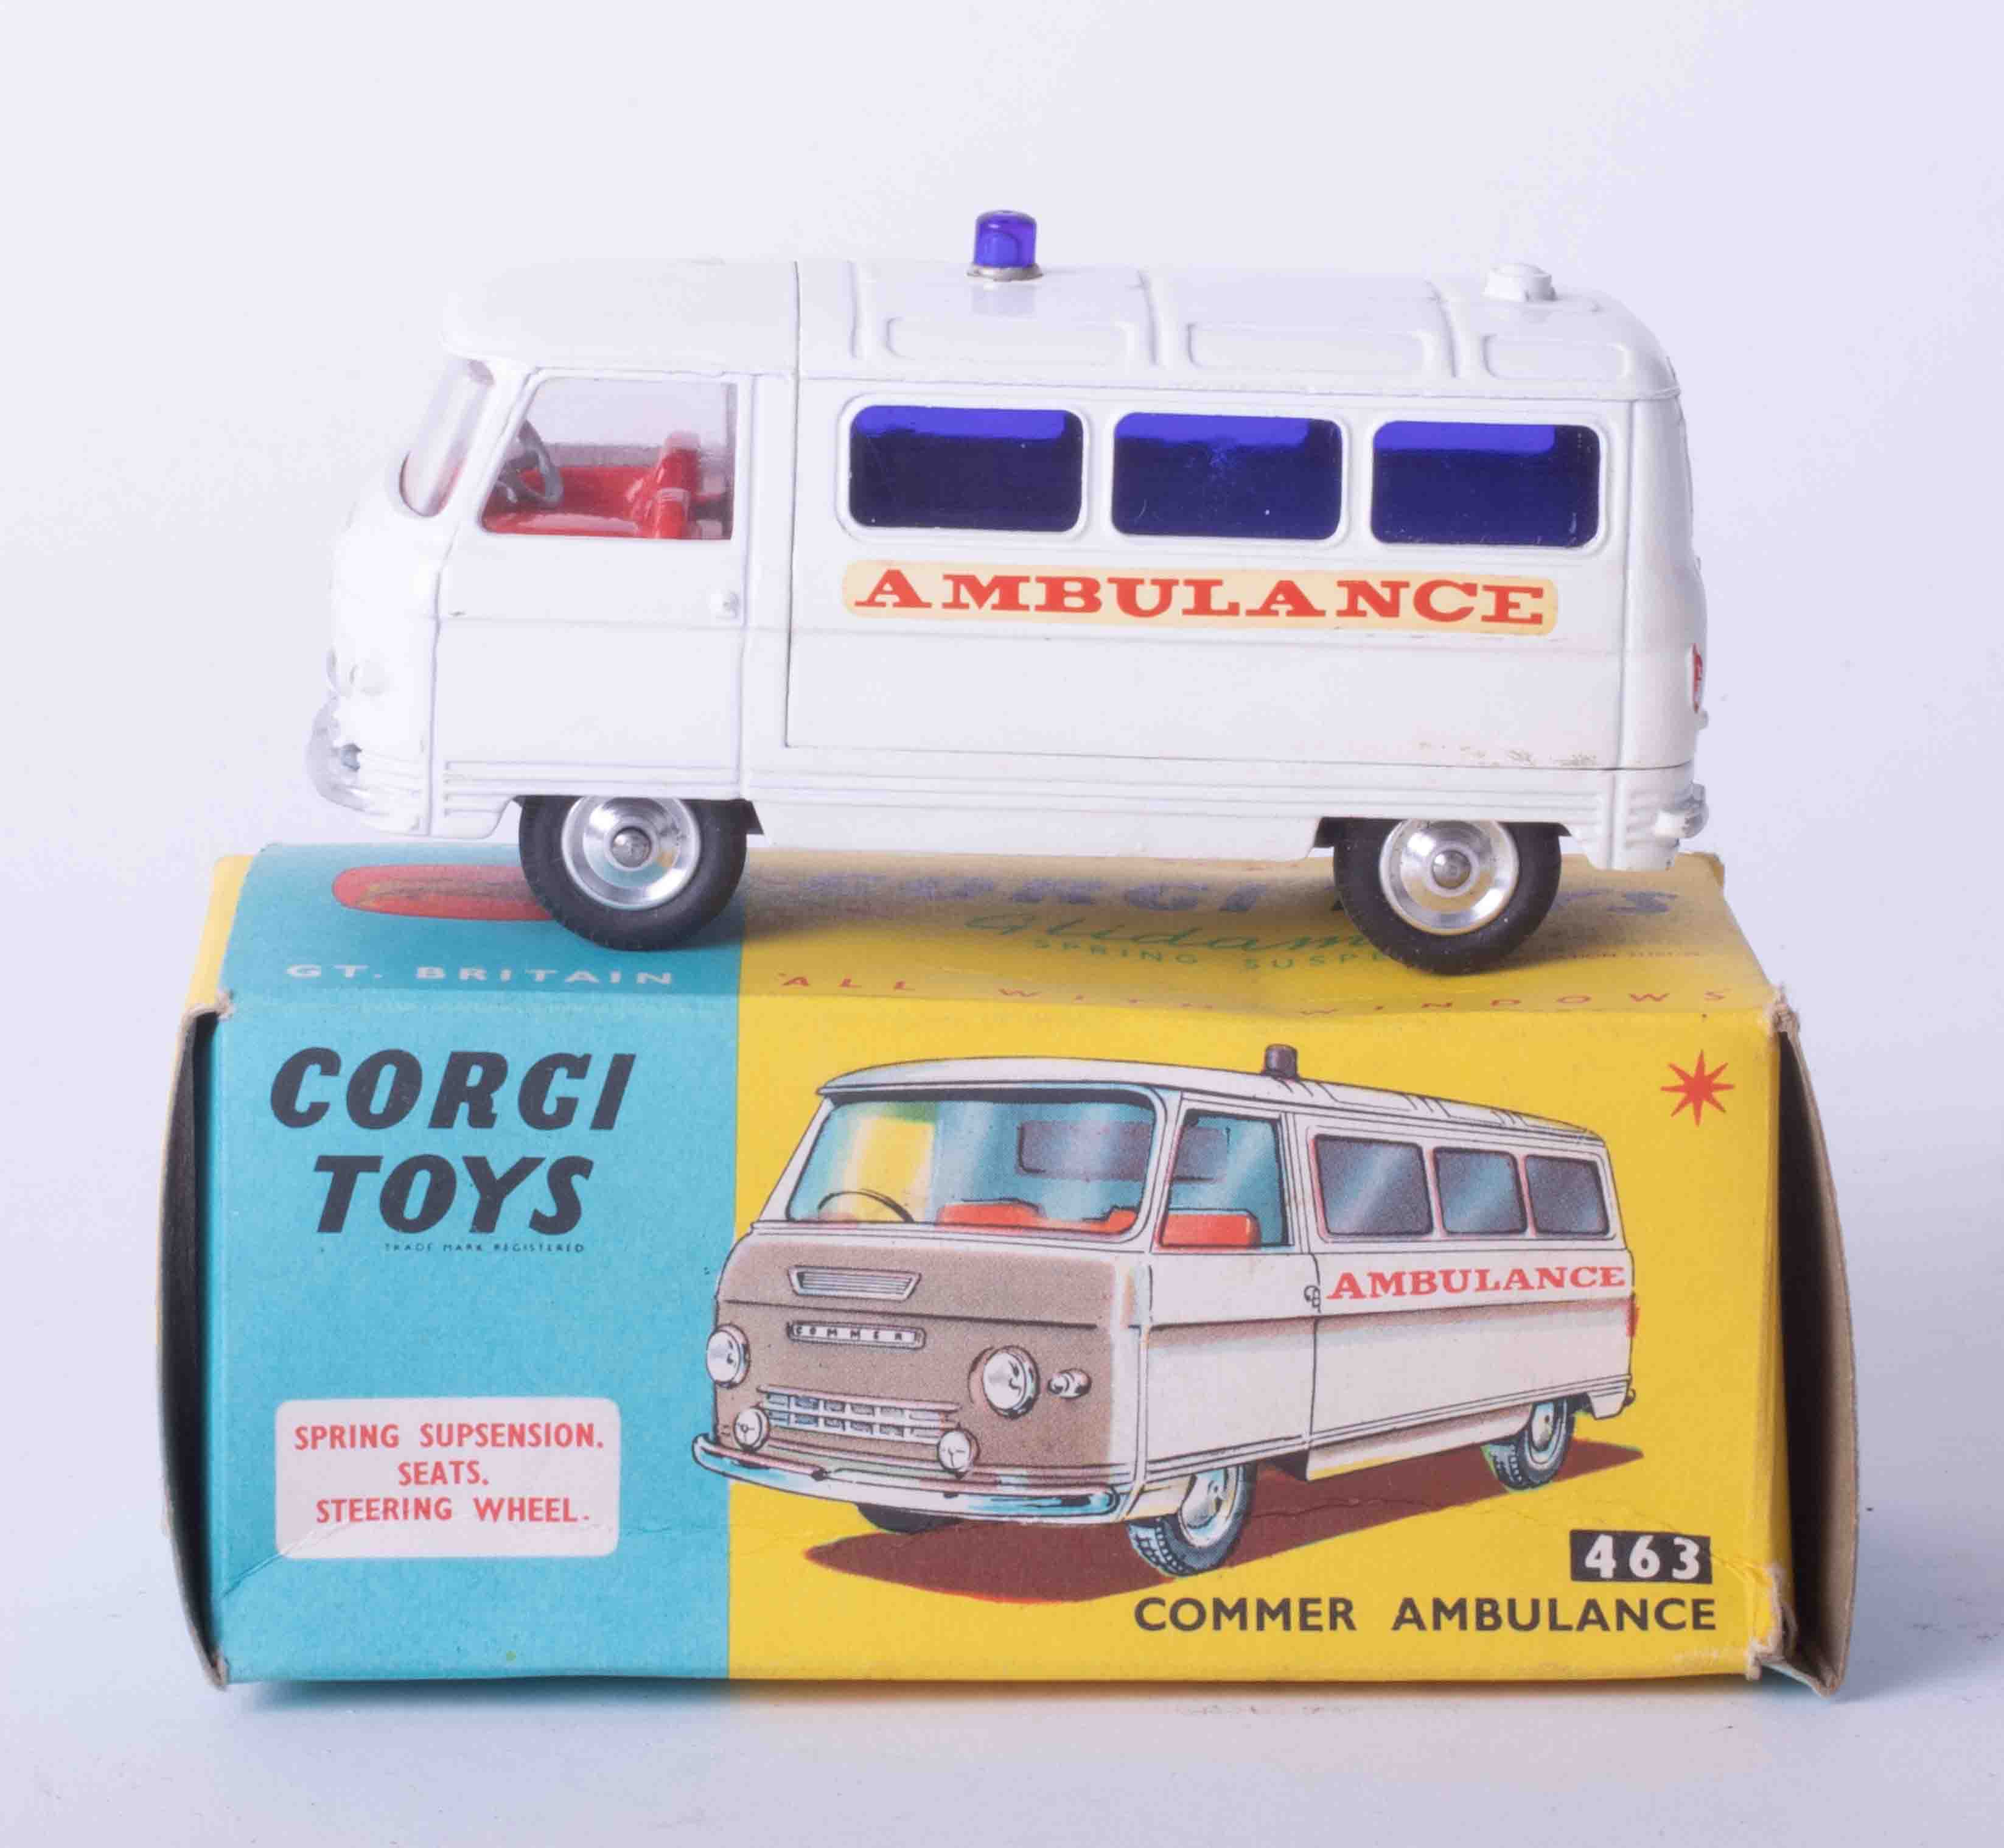 Corgi Toys 463 Commer Ambulance, boxed.